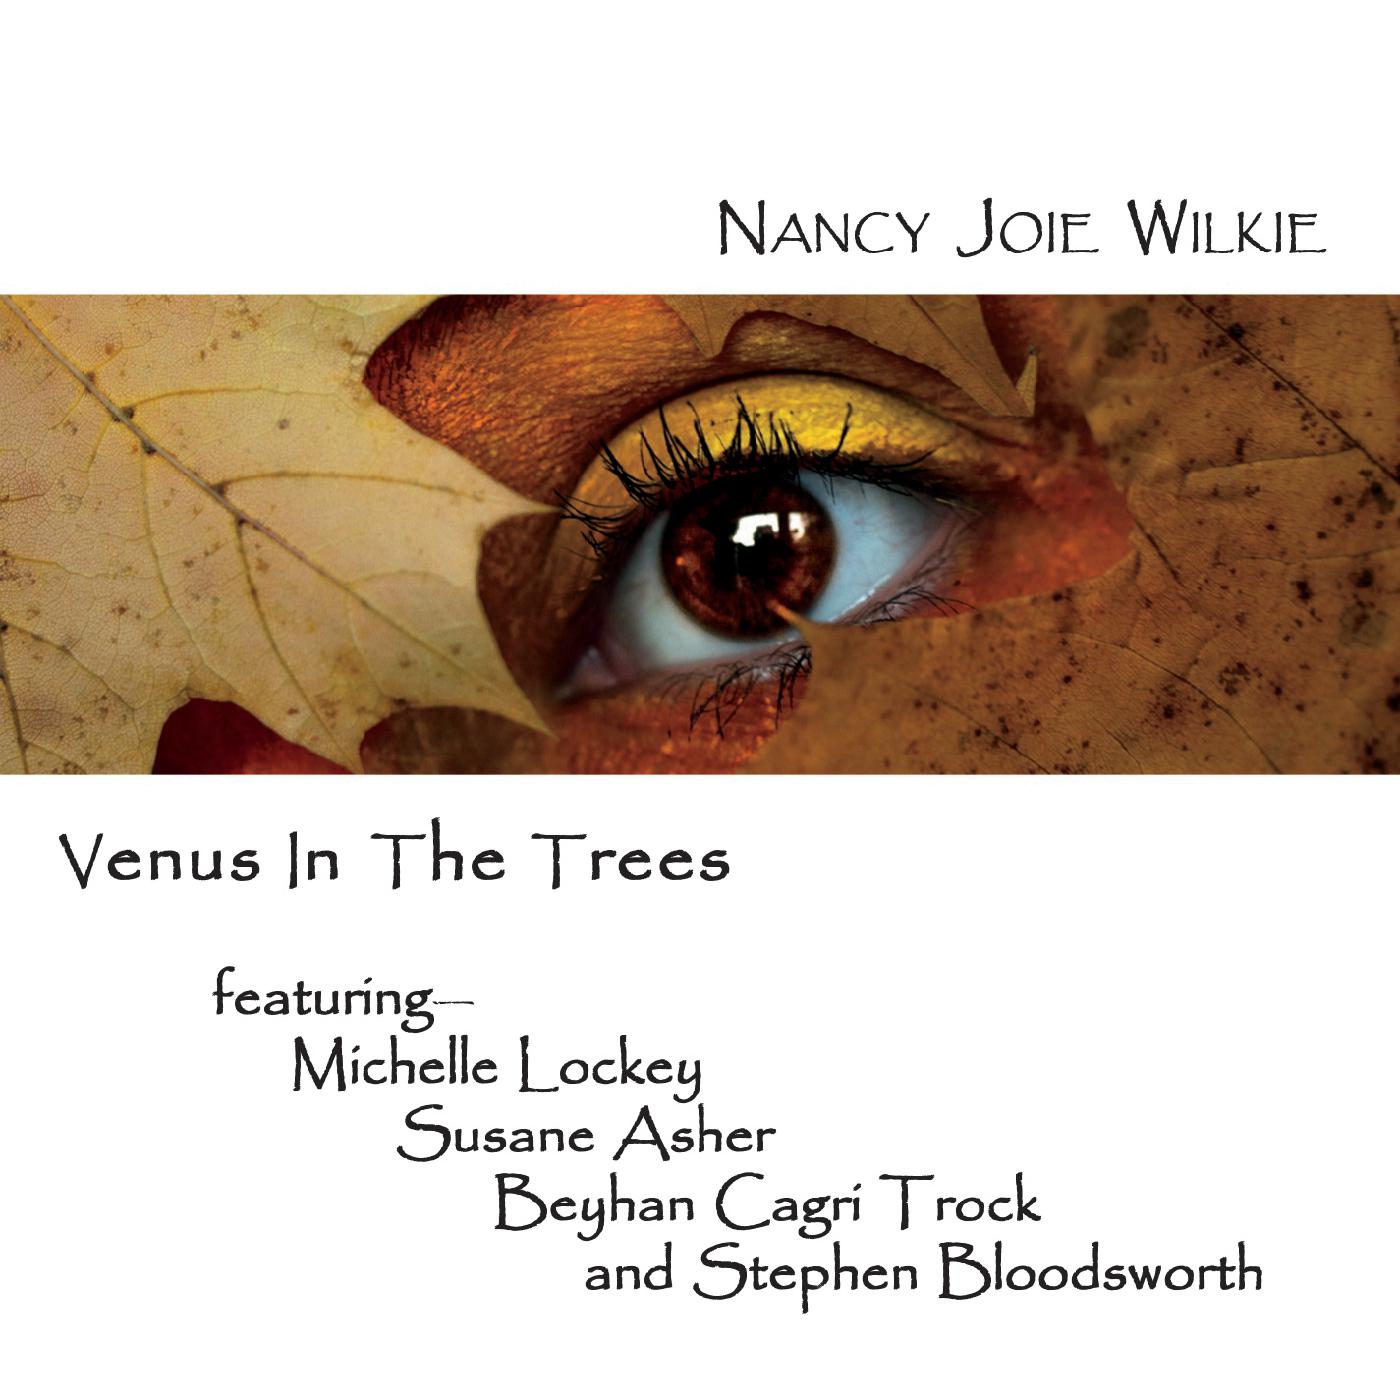 Venus in the Trees